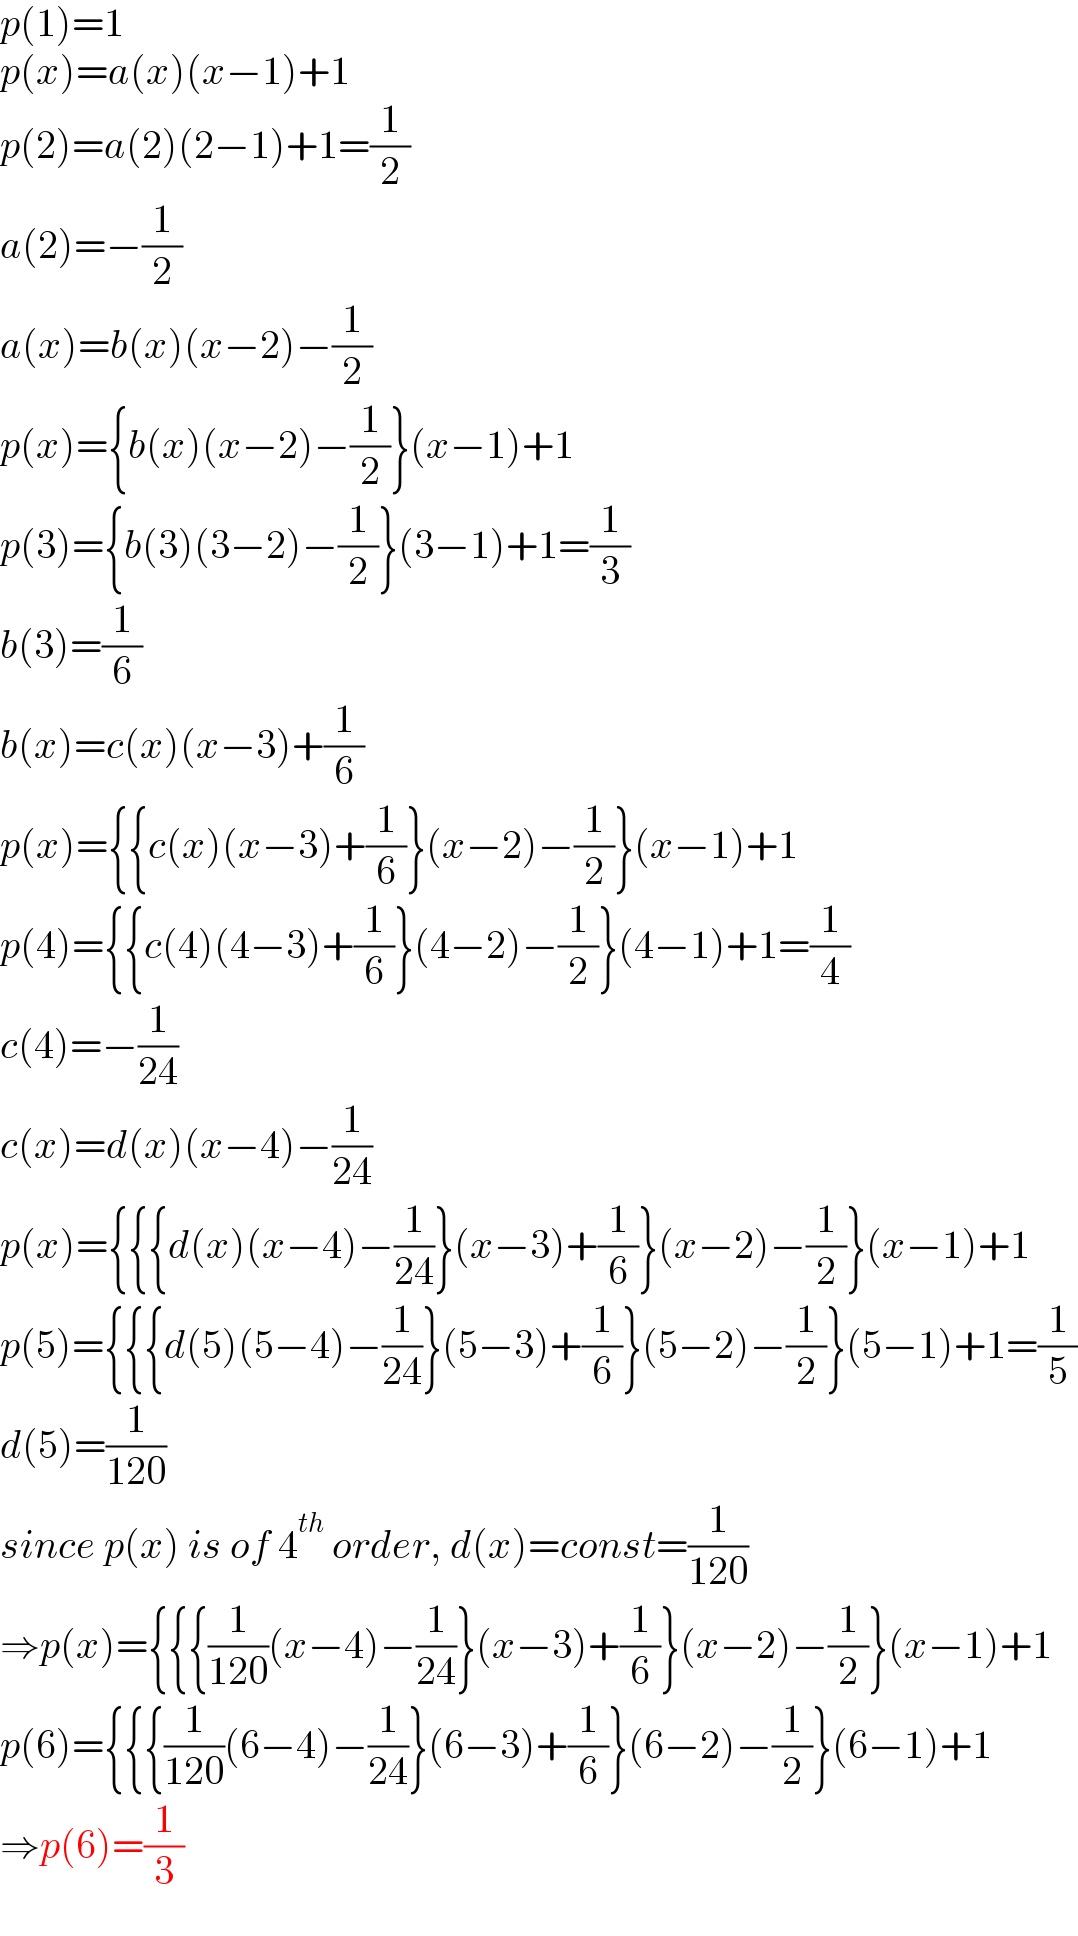 p(1)=1  p(x)=a(x)(x−1)+1  p(2)=a(2)(2−1)+1=(1/2)  a(2)=−(1/2)  a(x)=b(x)(x−2)−(1/2)  p(x)={b(x)(x−2)−(1/2)}(x−1)+1  p(3)={b(3)(3−2)−(1/2)}(3−1)+1=(1/3)  b(3)=(1/6)  b(x)=c(x)(x−3)+(1/6)  p(x)={{c(x)(x−3)+(1/6)}(x−2)−(1/2)}(x−1)+1  p(4)={{c(4)(4−3)+(1/6)}(4−2)−(1/2)}(4−1)+1=(1/4)  c(4)=−(1/(24))  c(x)=d(x)(x−4)−(1/(24))  p(x)={{{d(x)(x−4)−(1/(24))}(x−3)+(1/6)}(x−2)−(1/2)}(x−1)+1  p(5)={{{d(5)(5−4)−(1/(24))}(5−3)+(1/6)}(5−2)−(1/2)}(5−1)+1=(1/5)  d(5)=(1/(120))  since p(x) is of 4^(th)  order, d(x)=const=(1/(120))  ⇒p(x)={{{(1/(120))(x−4)−(1/(24))}(x−3)+(1/6)}(x−2)−(1/2)}(x−1)+1  p(6)={{{(1/(120))(6−4)−(1/(24))}(6−3)+(1/6)}(6−2)−(1/2)}(6−1)+1  ⇒p(6)=(1/3)  